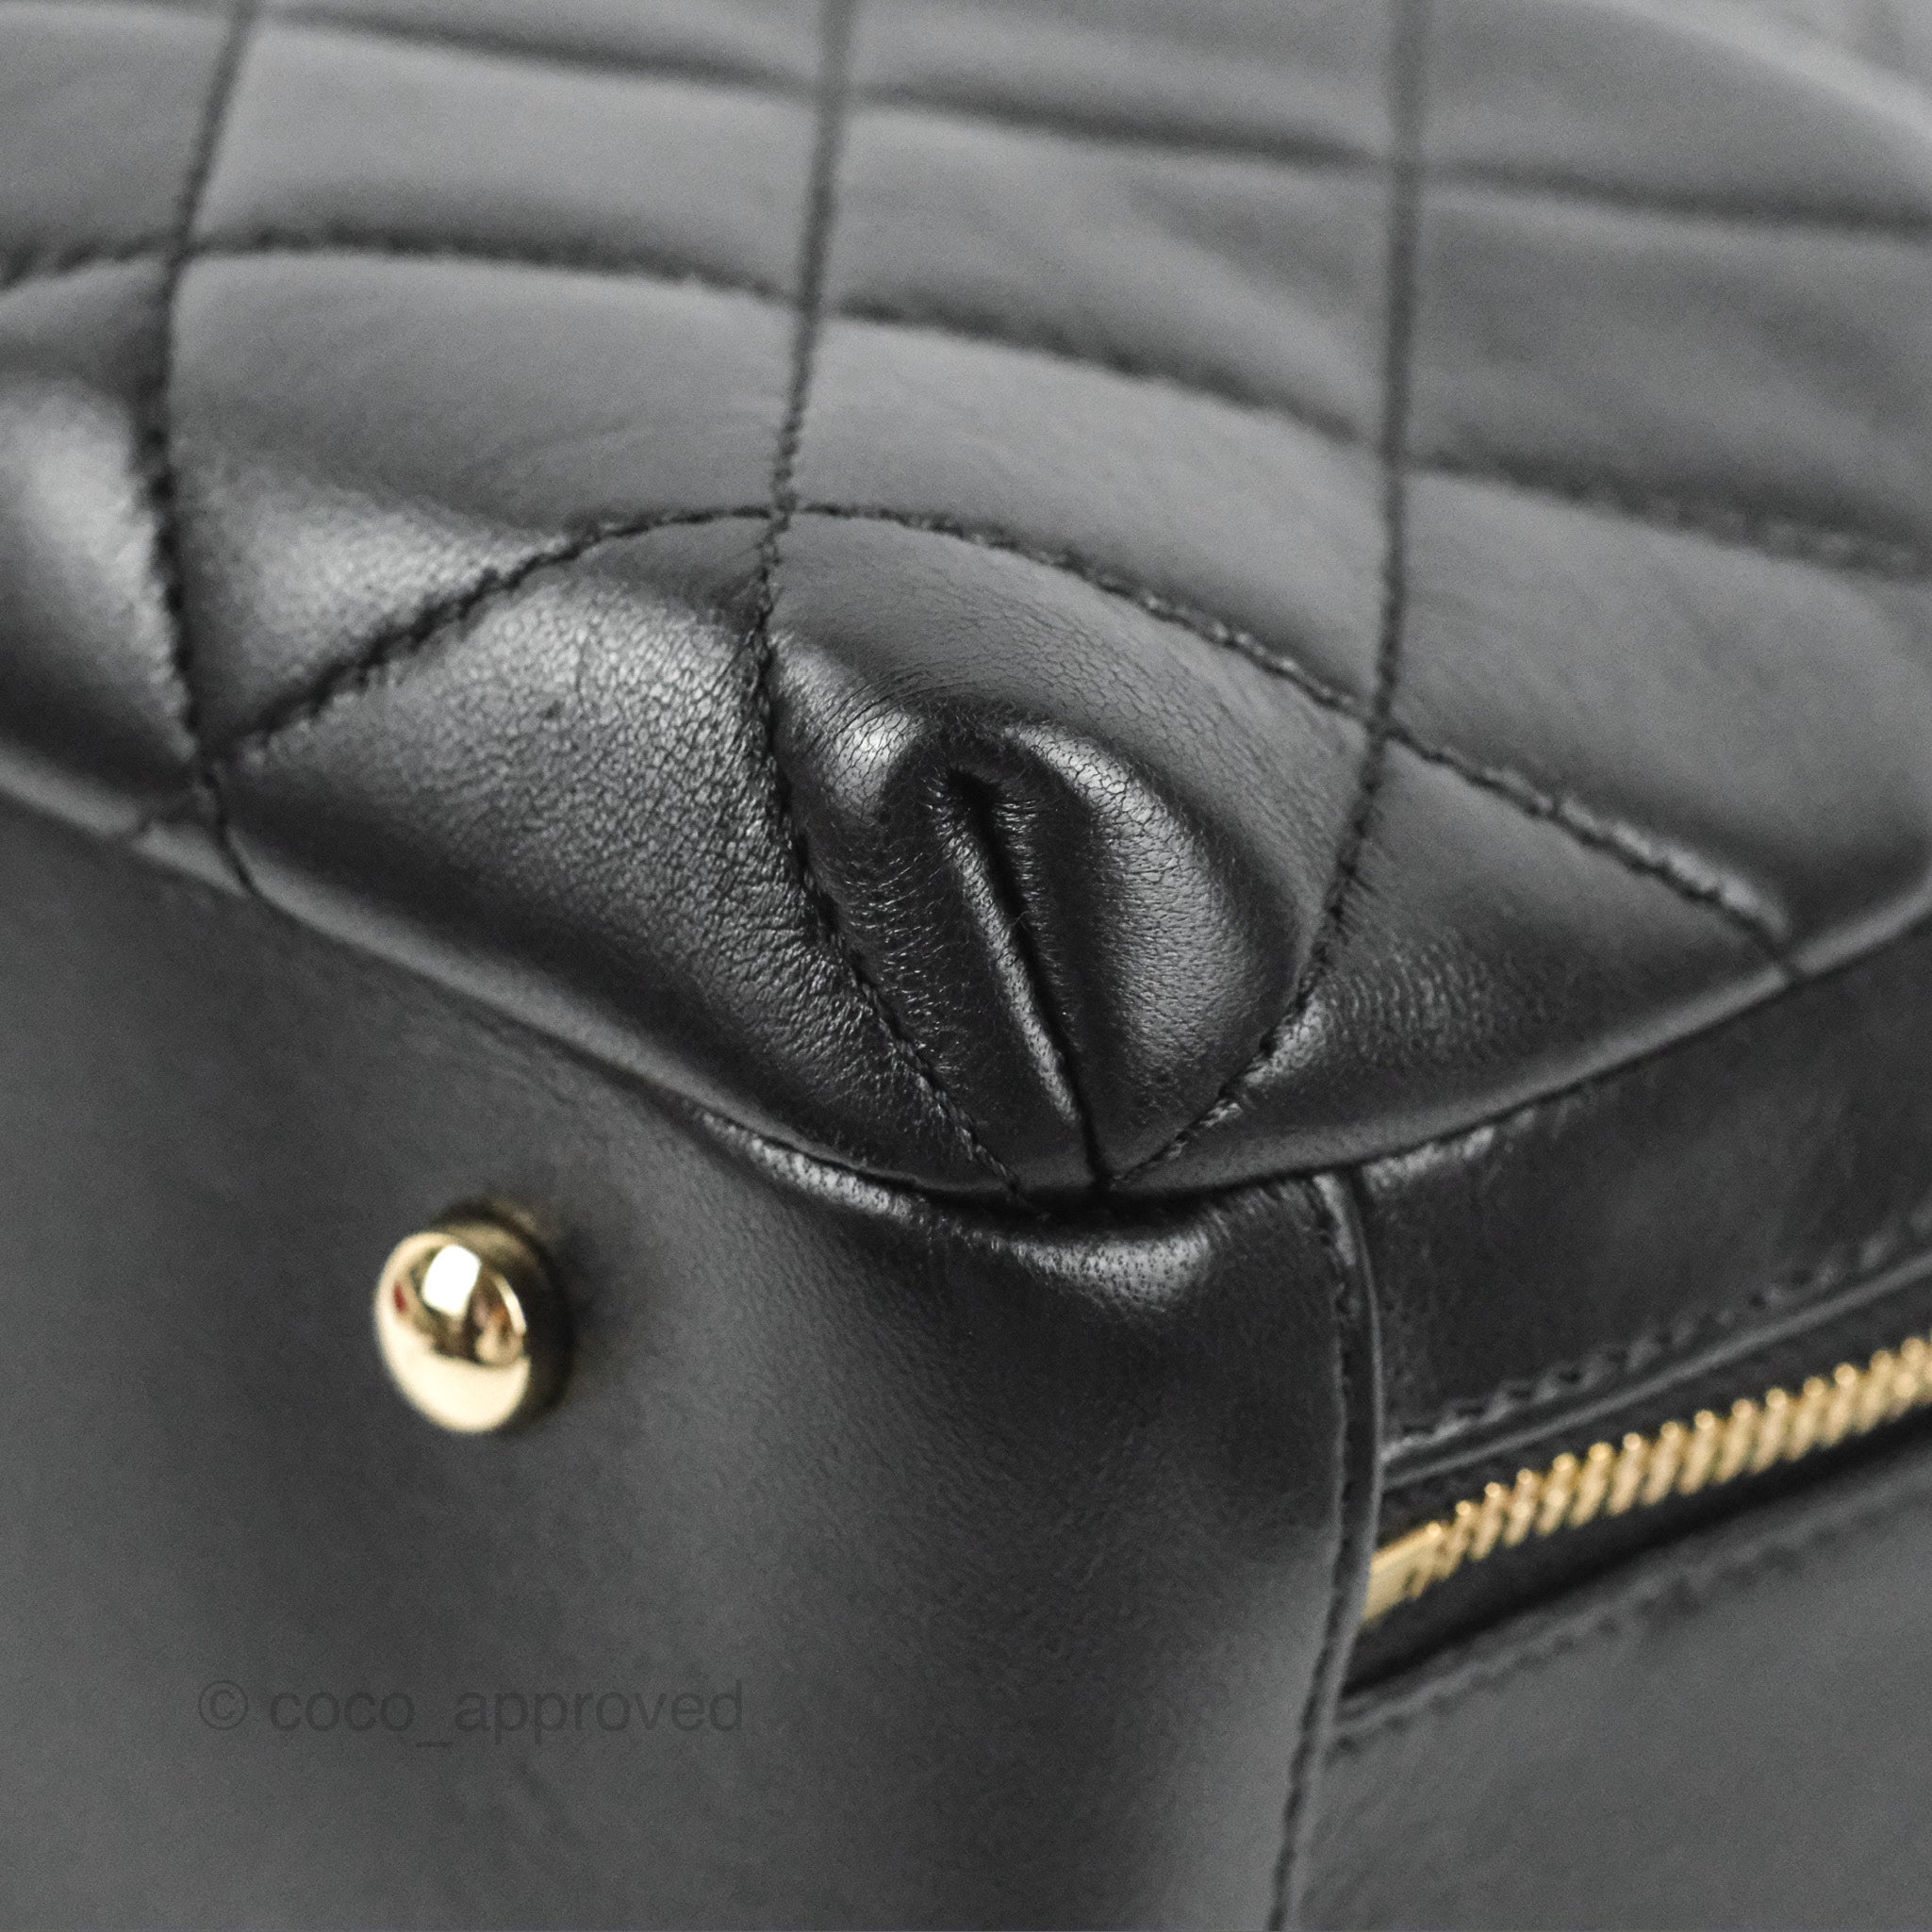 Fashion Adidas Bag Bowling Handbag Chanel - Chanel Trendy Cc Light